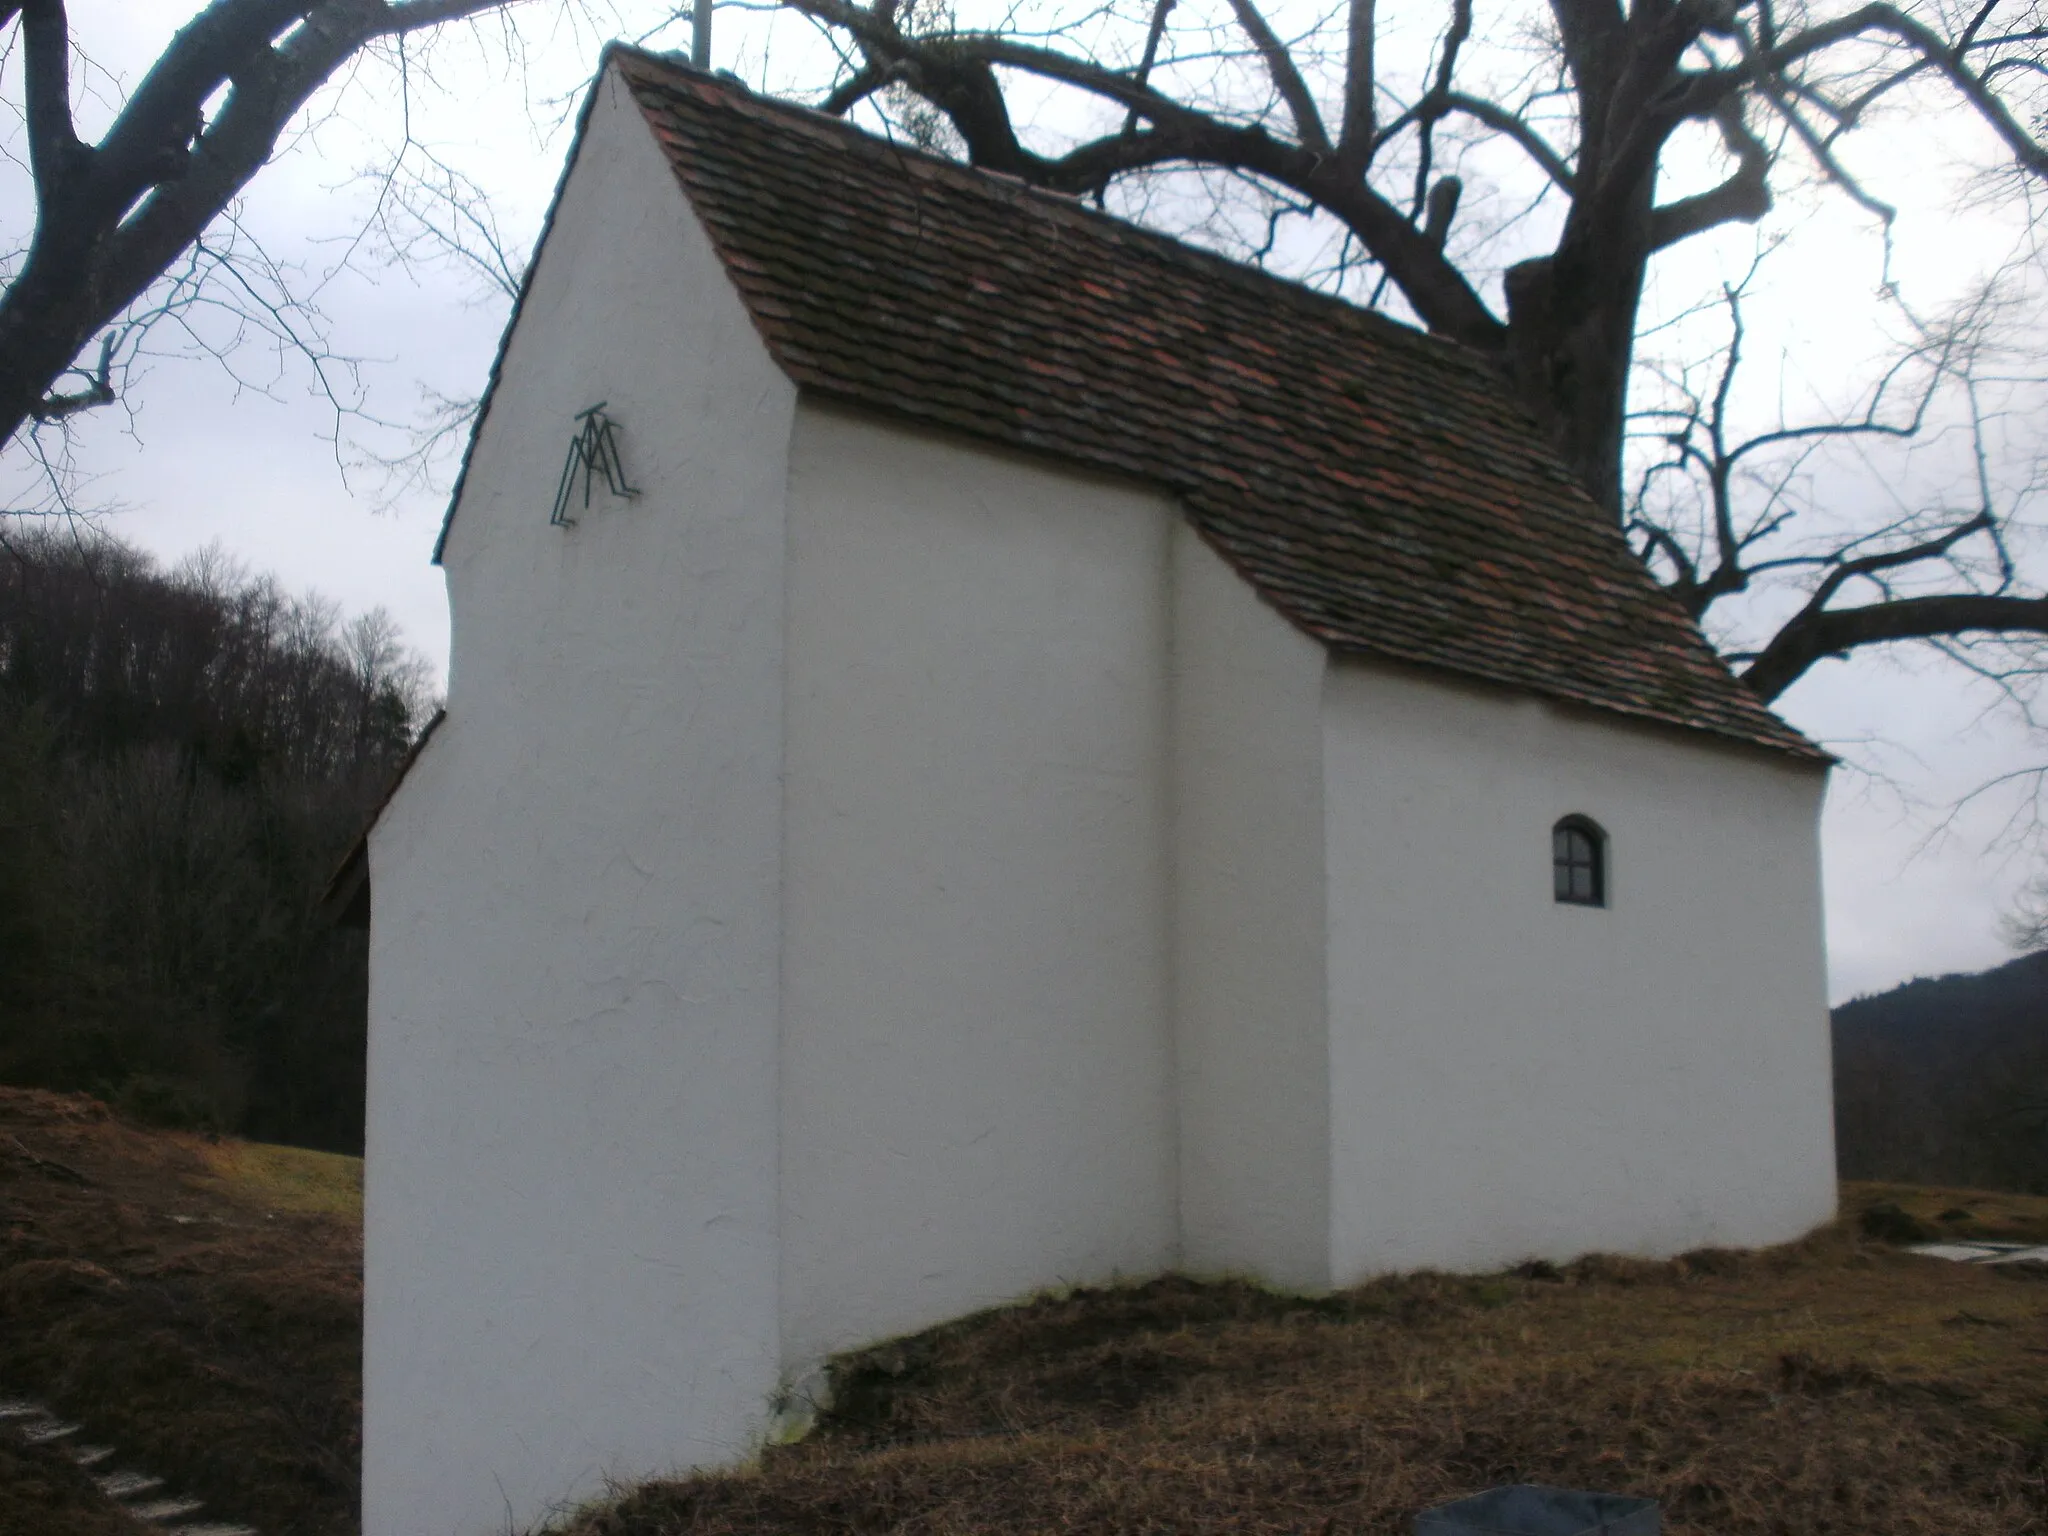 Photo showing: The Reiterleskapelle (build 1714) near Waldstetten (Ostalbkreis), Germany